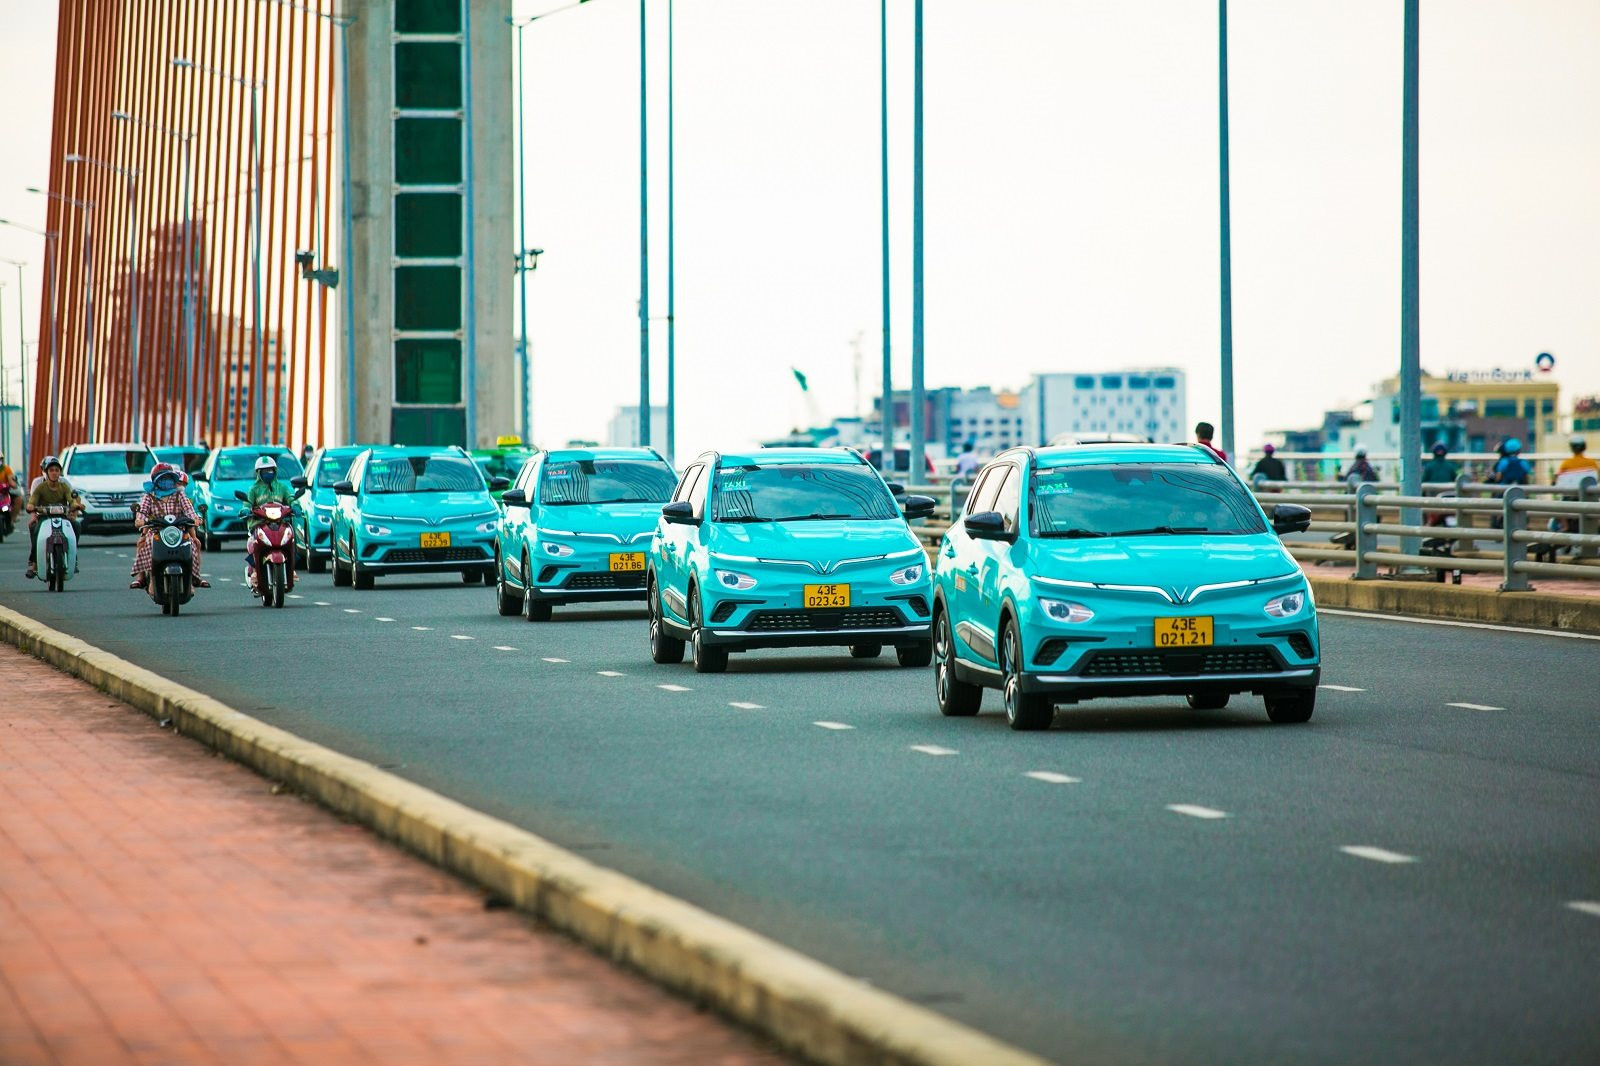 Hãng taxi của tỷ phú Phạm Nhật Vượng cán mốc 1 triệu chuyến đi chỉ sau 10 tuần, muốn “phủ xanh” 27 tỉnh thành ngay trong năm 2023